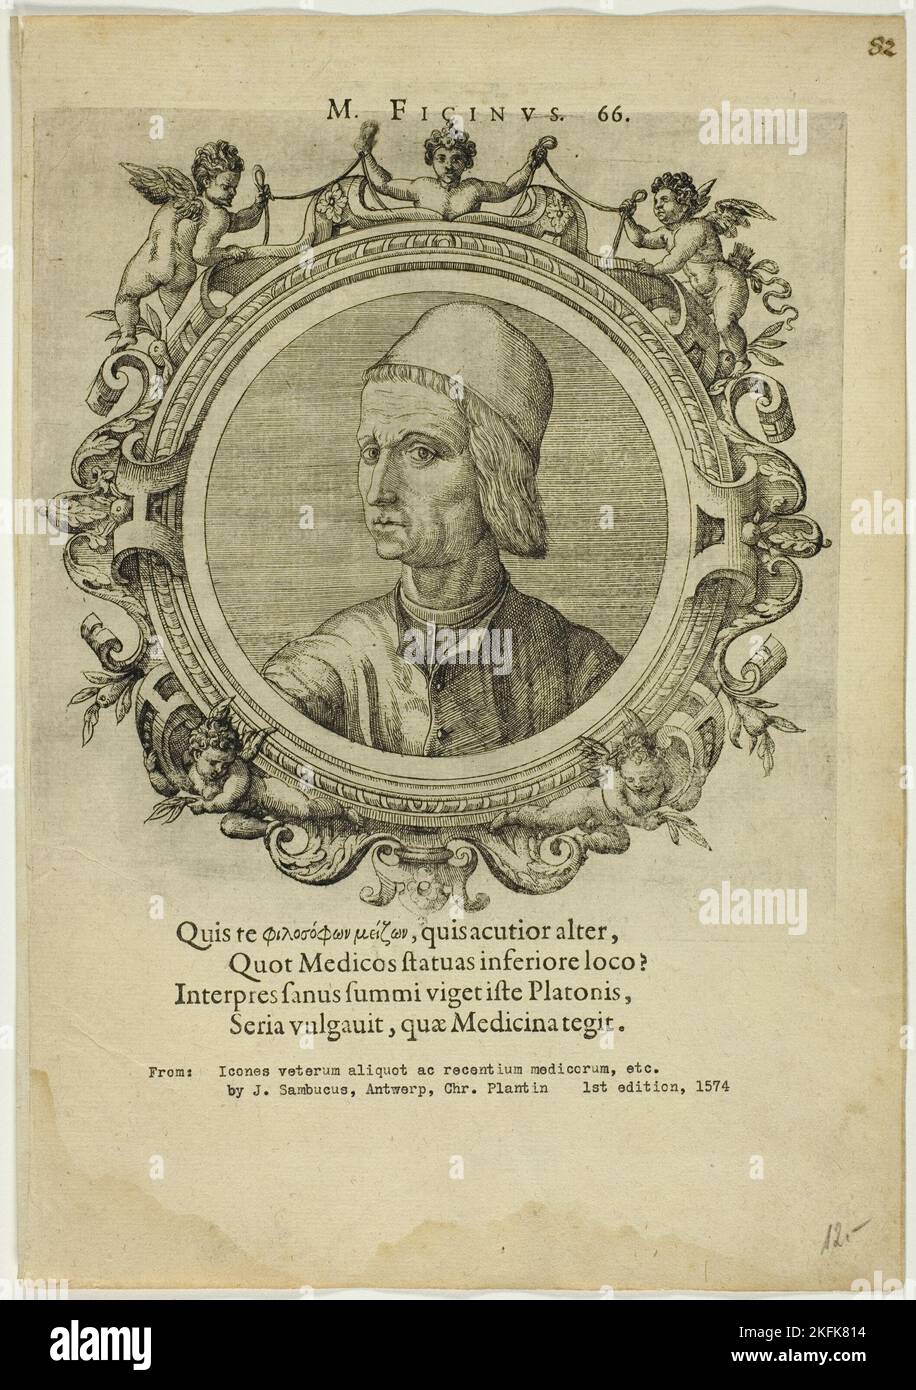 Ritratto di Marsilio Ficino, pubblicato nel 1574. 'M. Ficinus'. Umanista, filosofo, studioso e sacerdote cattolico italiano. Foto Stock